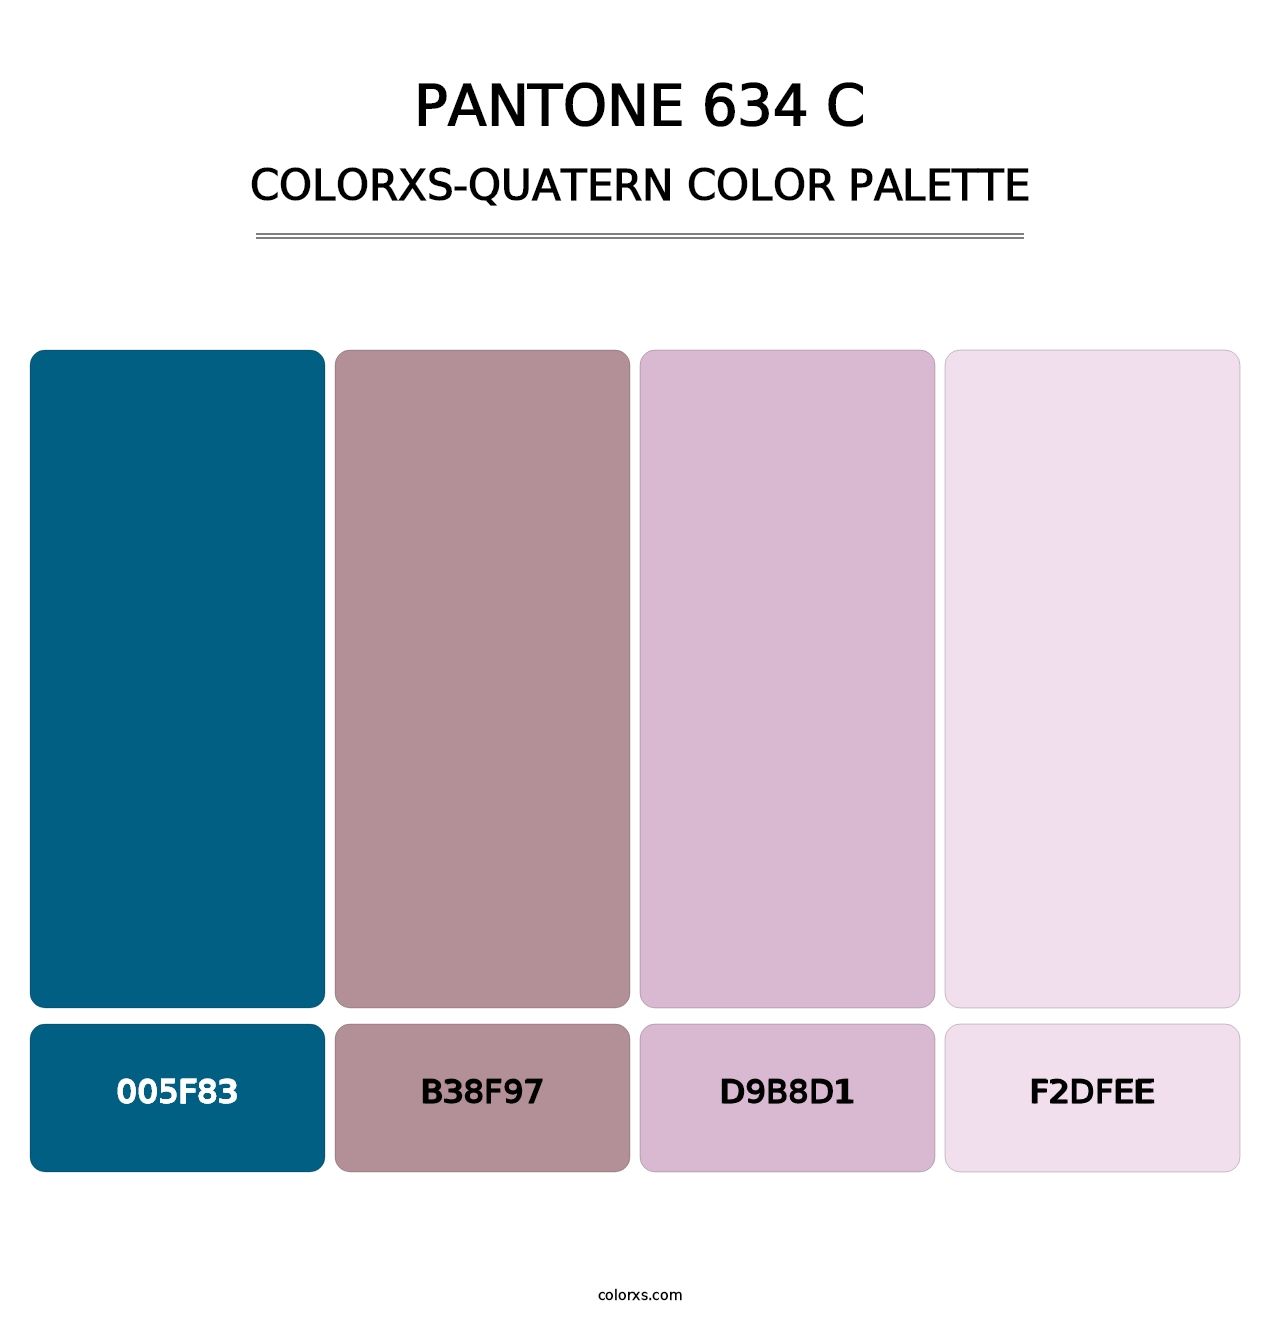 PANTONE 634 C - Colorxs Quatern Palette